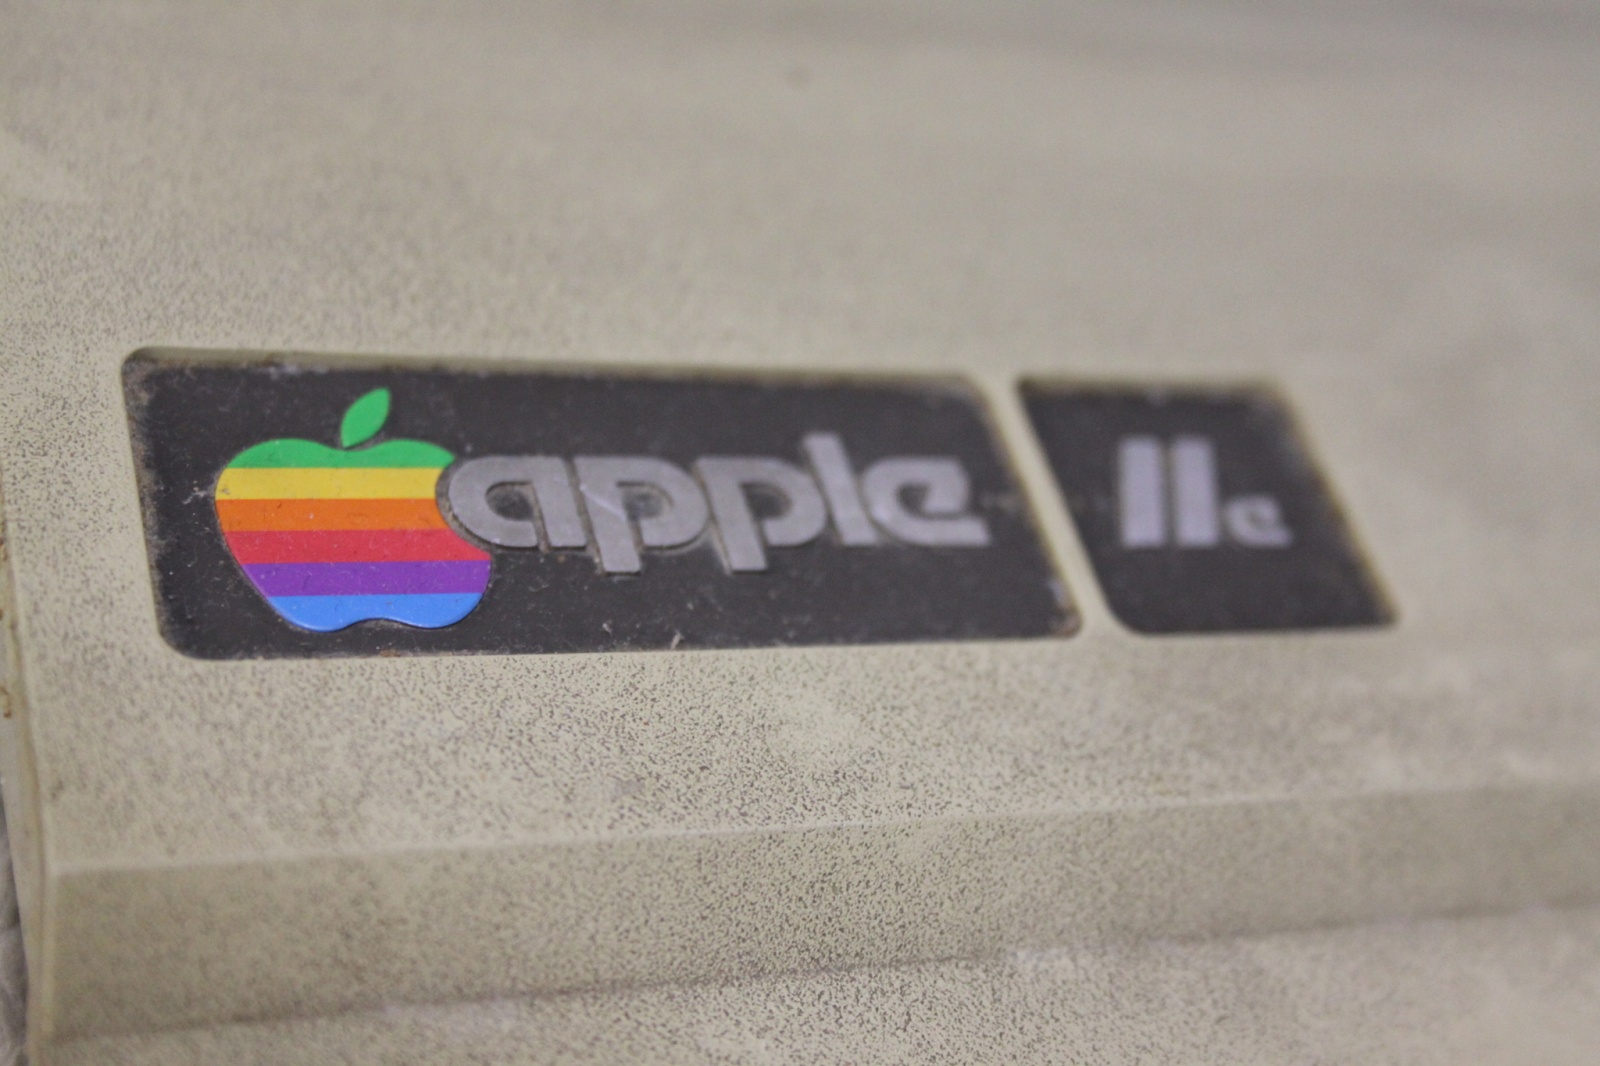 Фирменный значок Macintosh - цветное еще тогда яблочко. Модификация - Apple IIe. Отличается от оригинальной "двойки" кроме внешнего вида увеличенной оперативкой (Было 4/48КБ на выбор, стало 64 КБ), более дешевыми чипами ну и прочими не очень большими изменениями, для которых маркетологи решили не выпускать  новый Мак, а просто добавить буковку к названию)